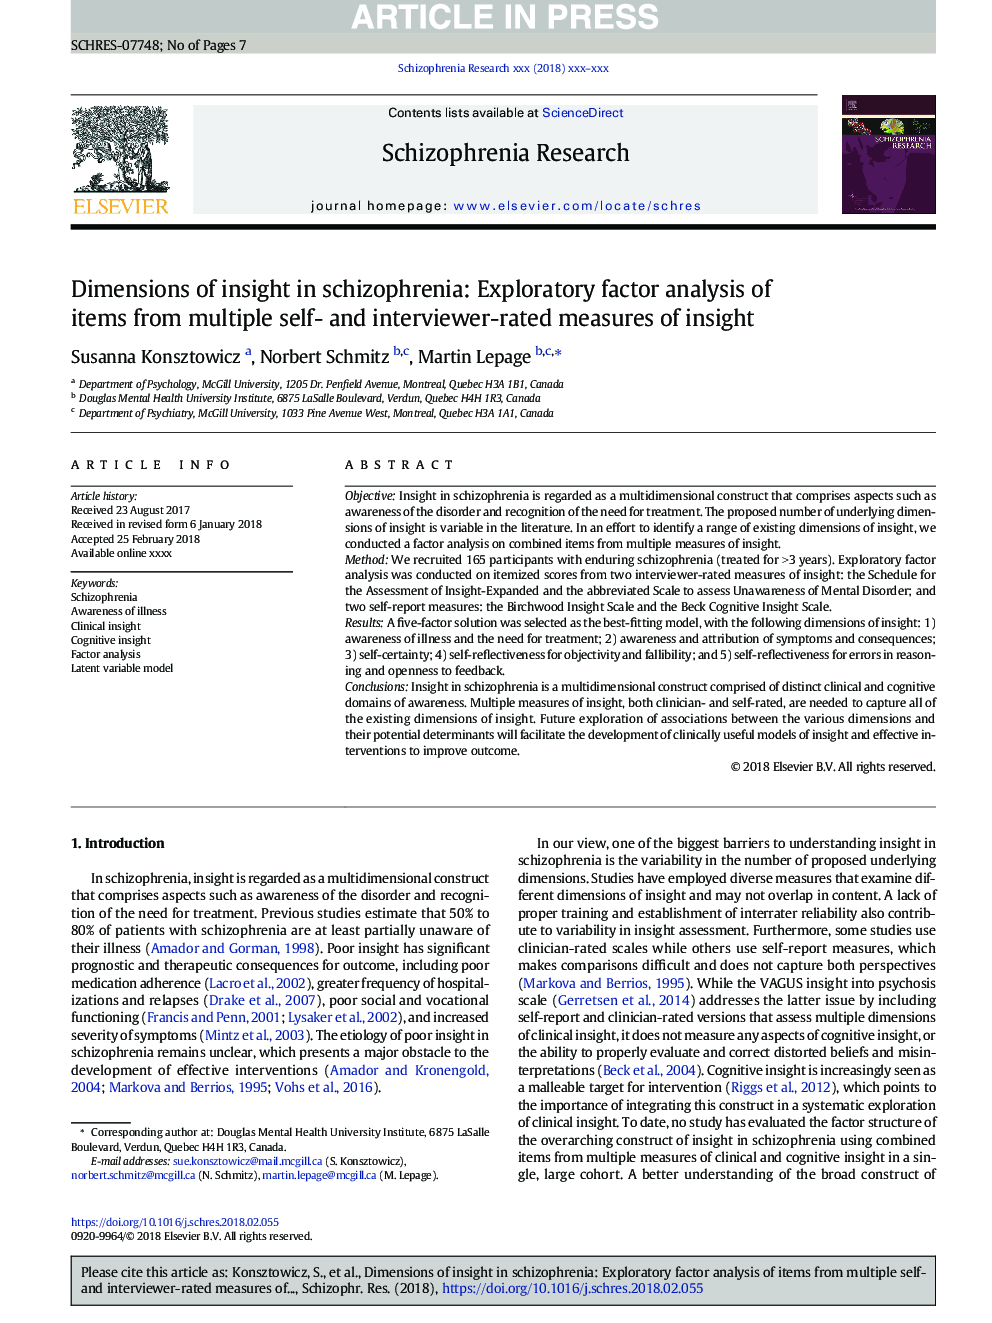 ابعاد بینش در اسکیزوفرن: تجزیه و تحلیل عامل فاکتور اکتشافی از اقلام از چندین اندازه گیری خودآگاه و مصاحبه با امتیاز بینایی